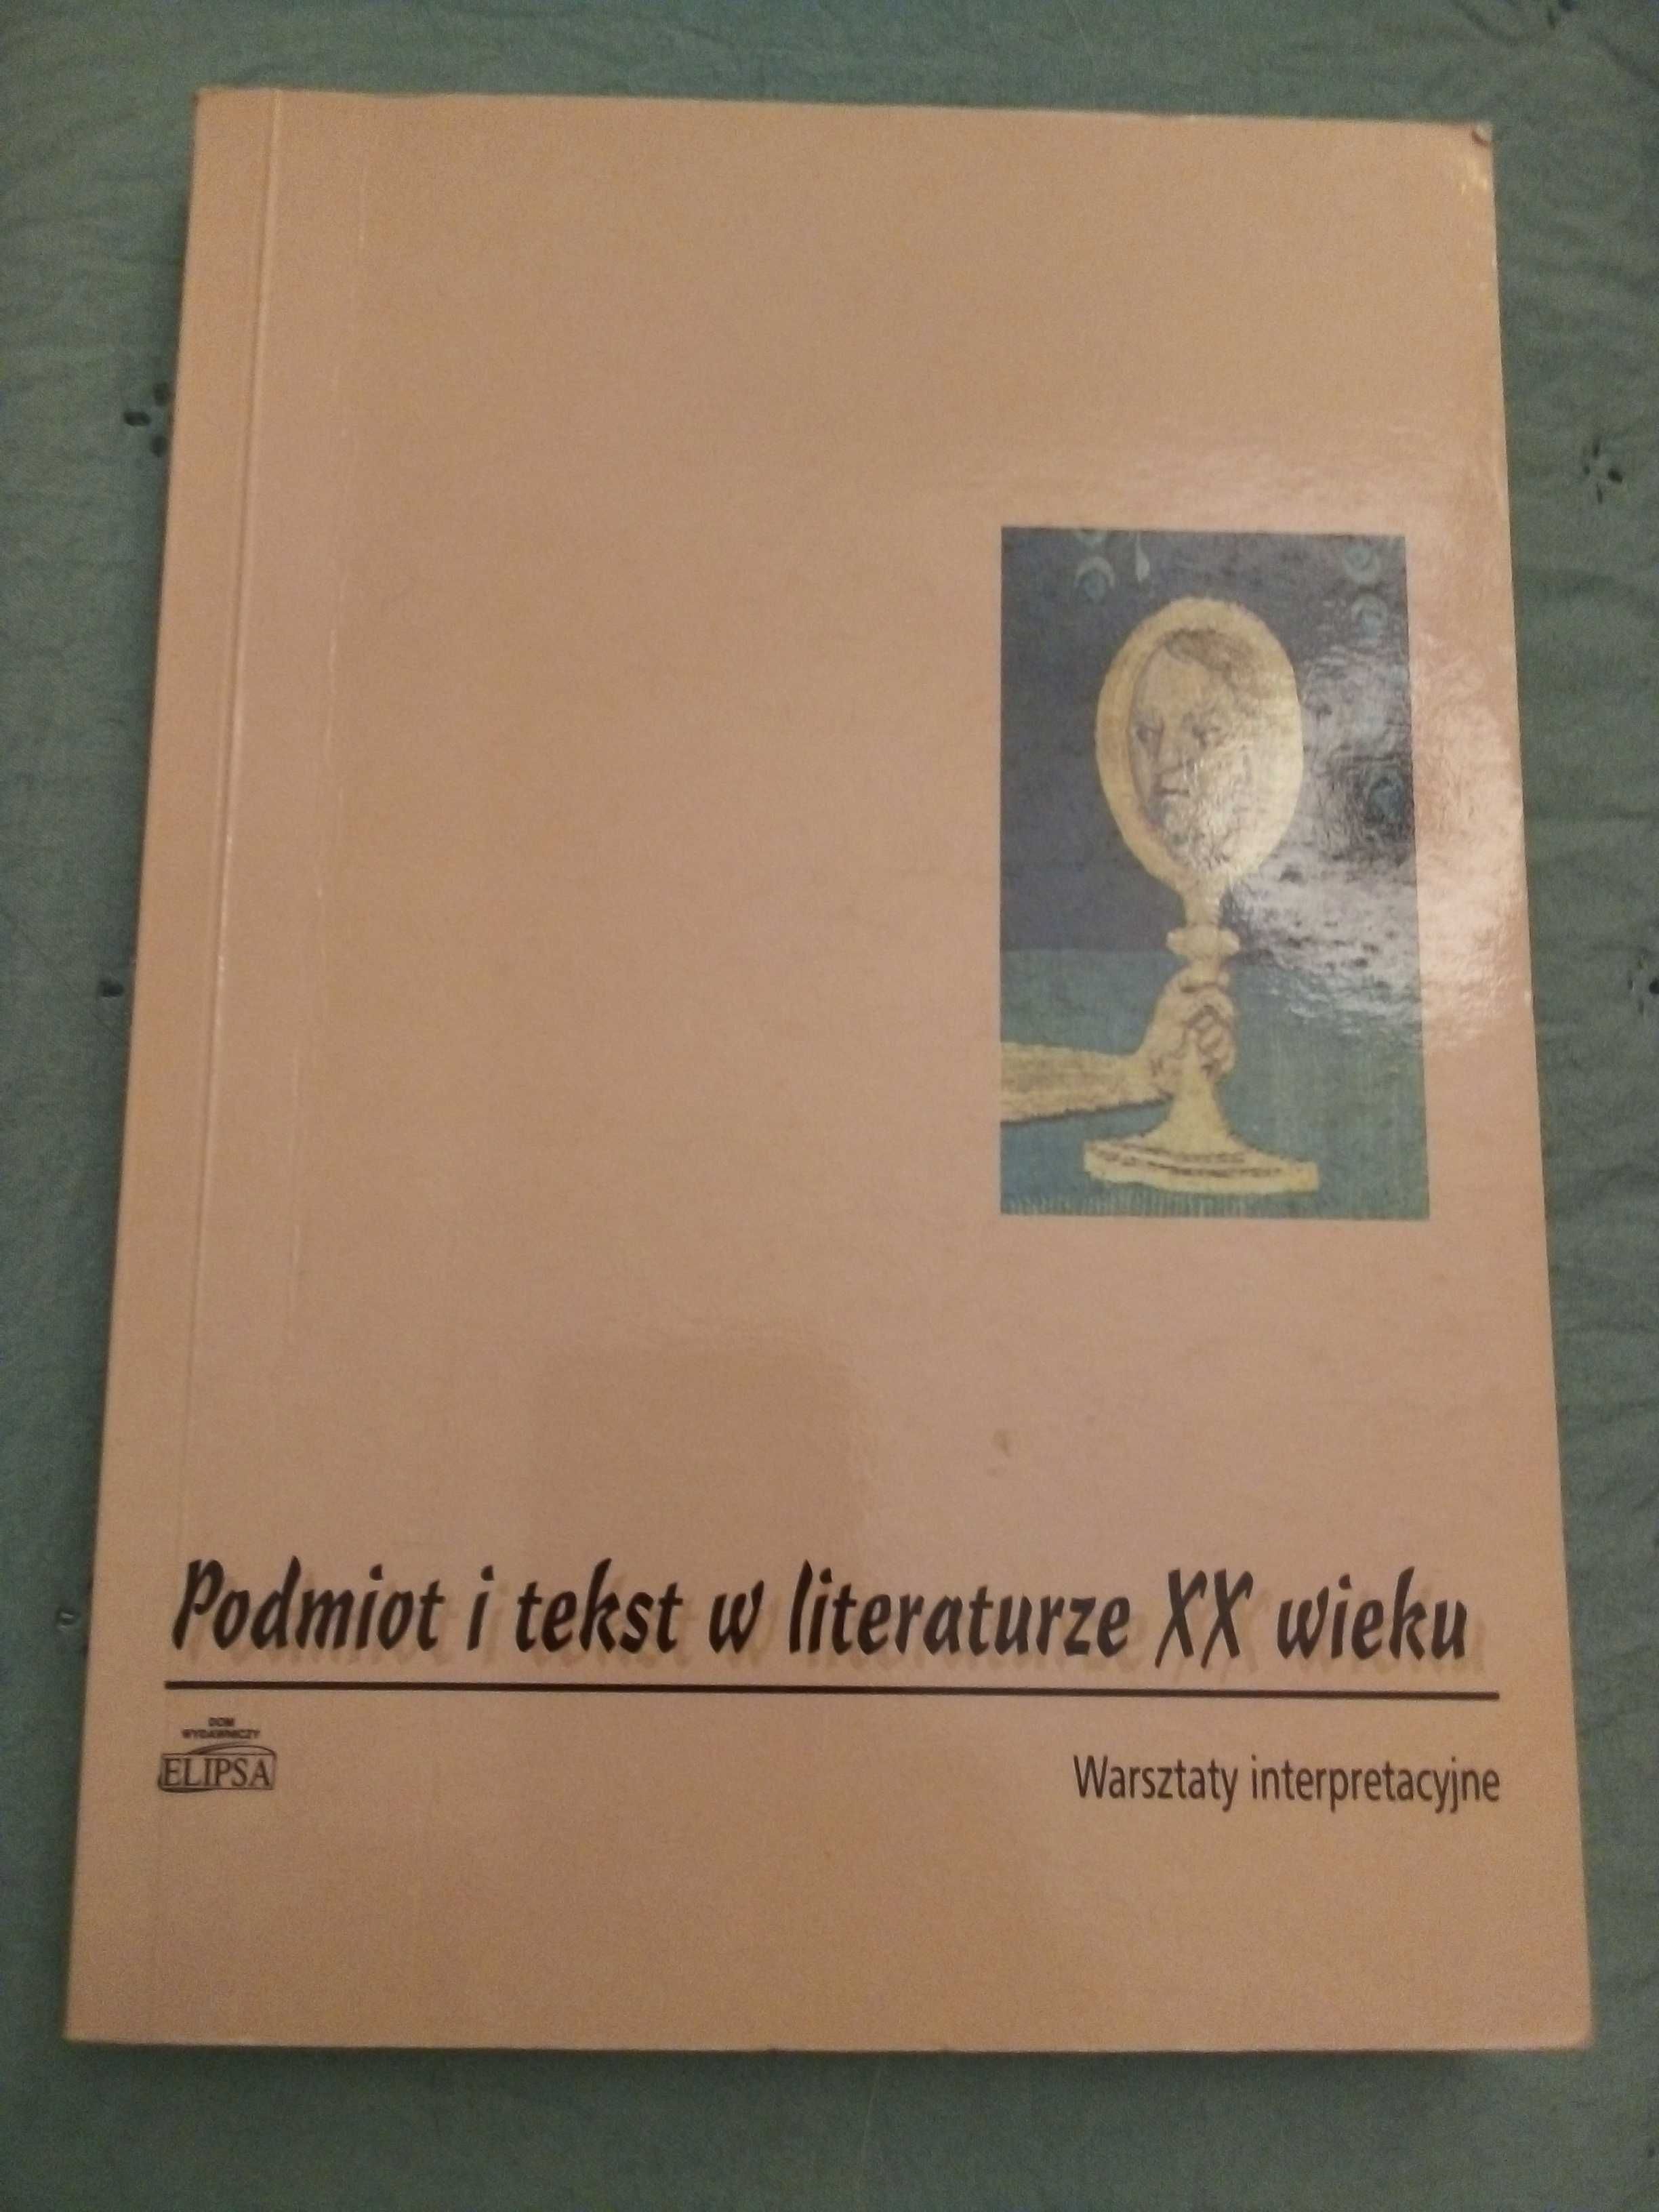 Podmiot i tekst w literaturze XX wieku. Warsztaty interpretacyjne.